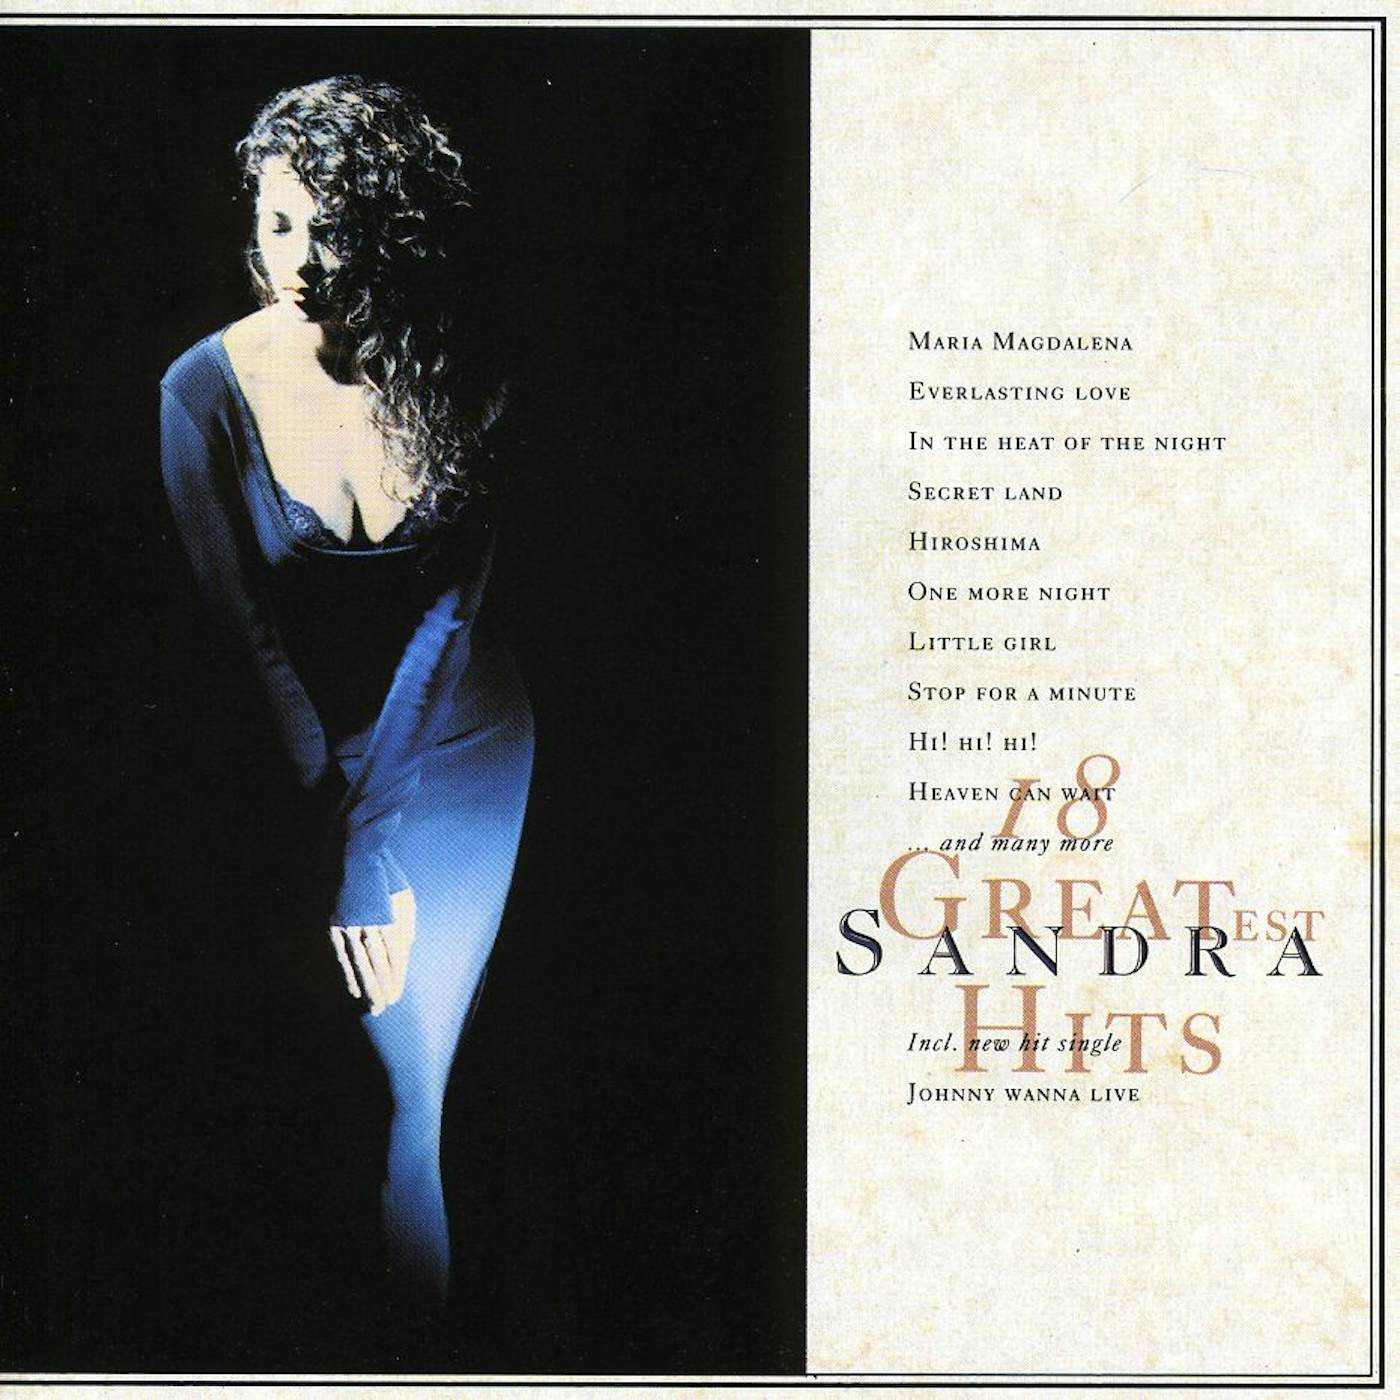 Sandra 18 GREATEST HITS CD